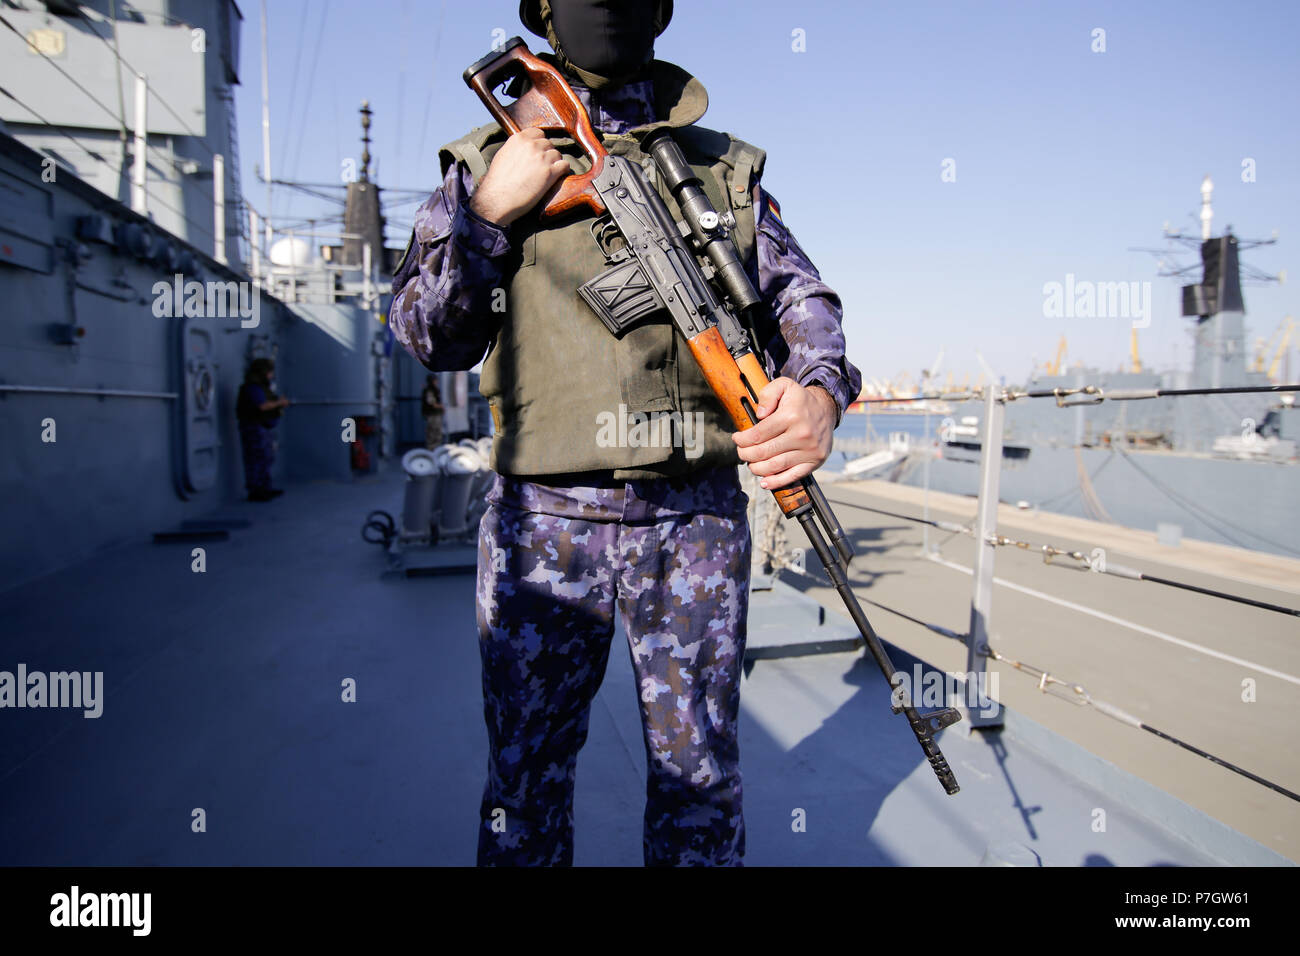 CONSTANTA, Roumanie - 20 juin 2018 : marin militaire roumaine sur le pont de 'Regele Ferdinand' frégate, armés de fusil de précision Dragunov, le 20 juin. Banque D'Images